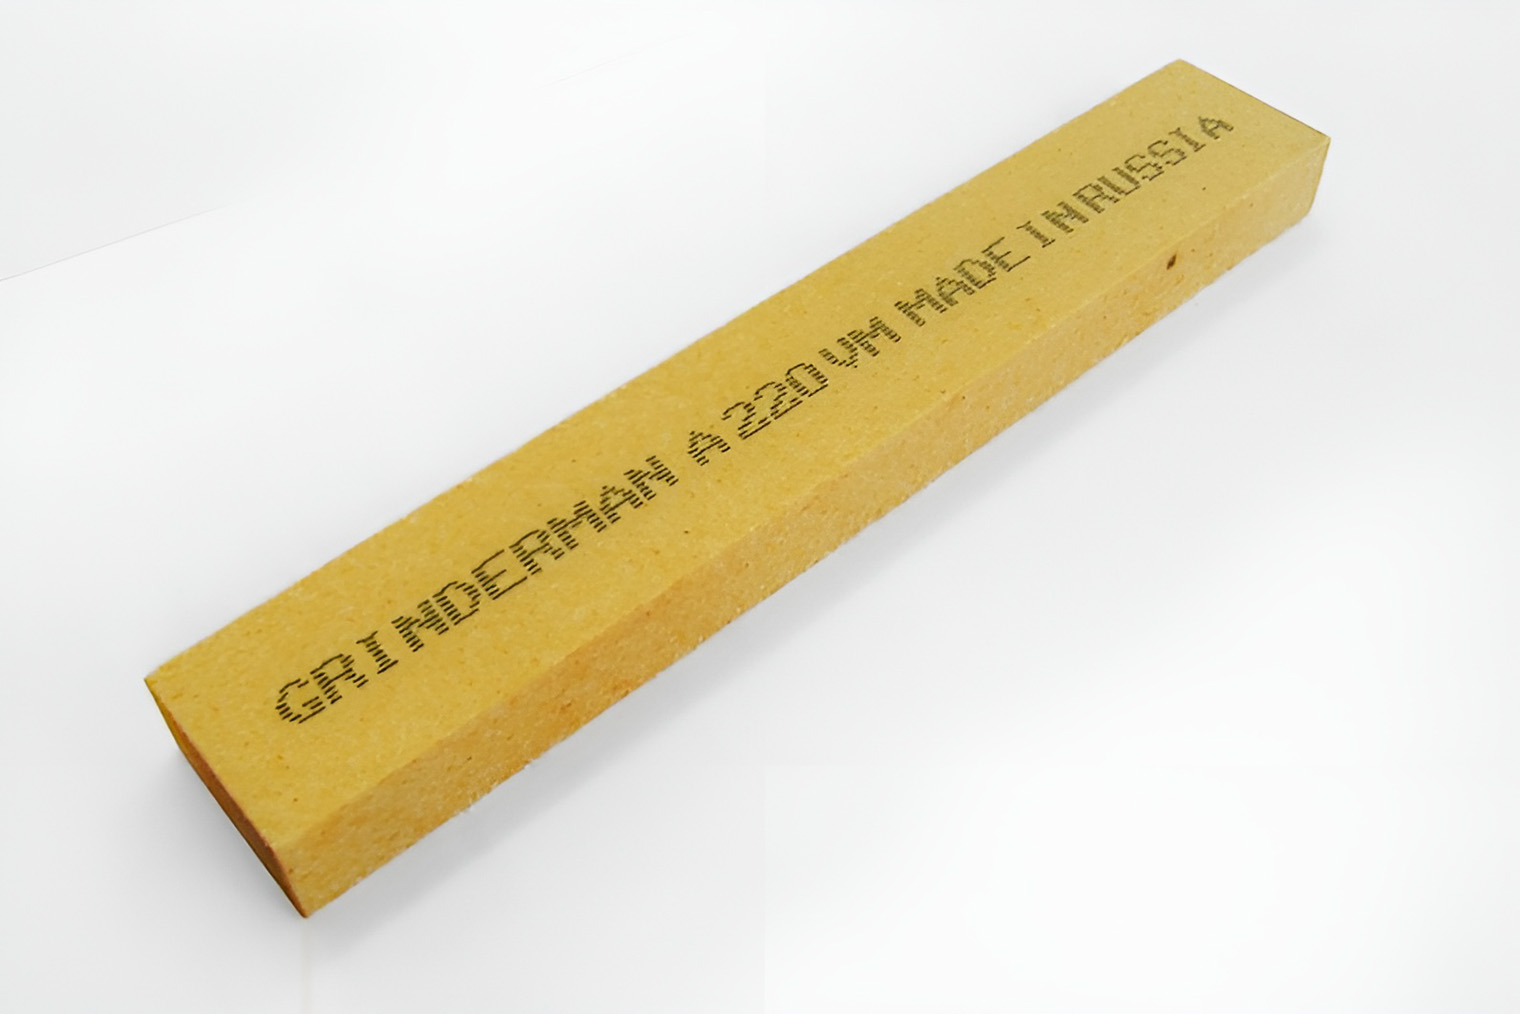 Точильные камни бренда Grinderman из оксида алюминия и карбида кремния стоят одинаково — 420 ₽ за брусок. Источник: grinder-man.ru